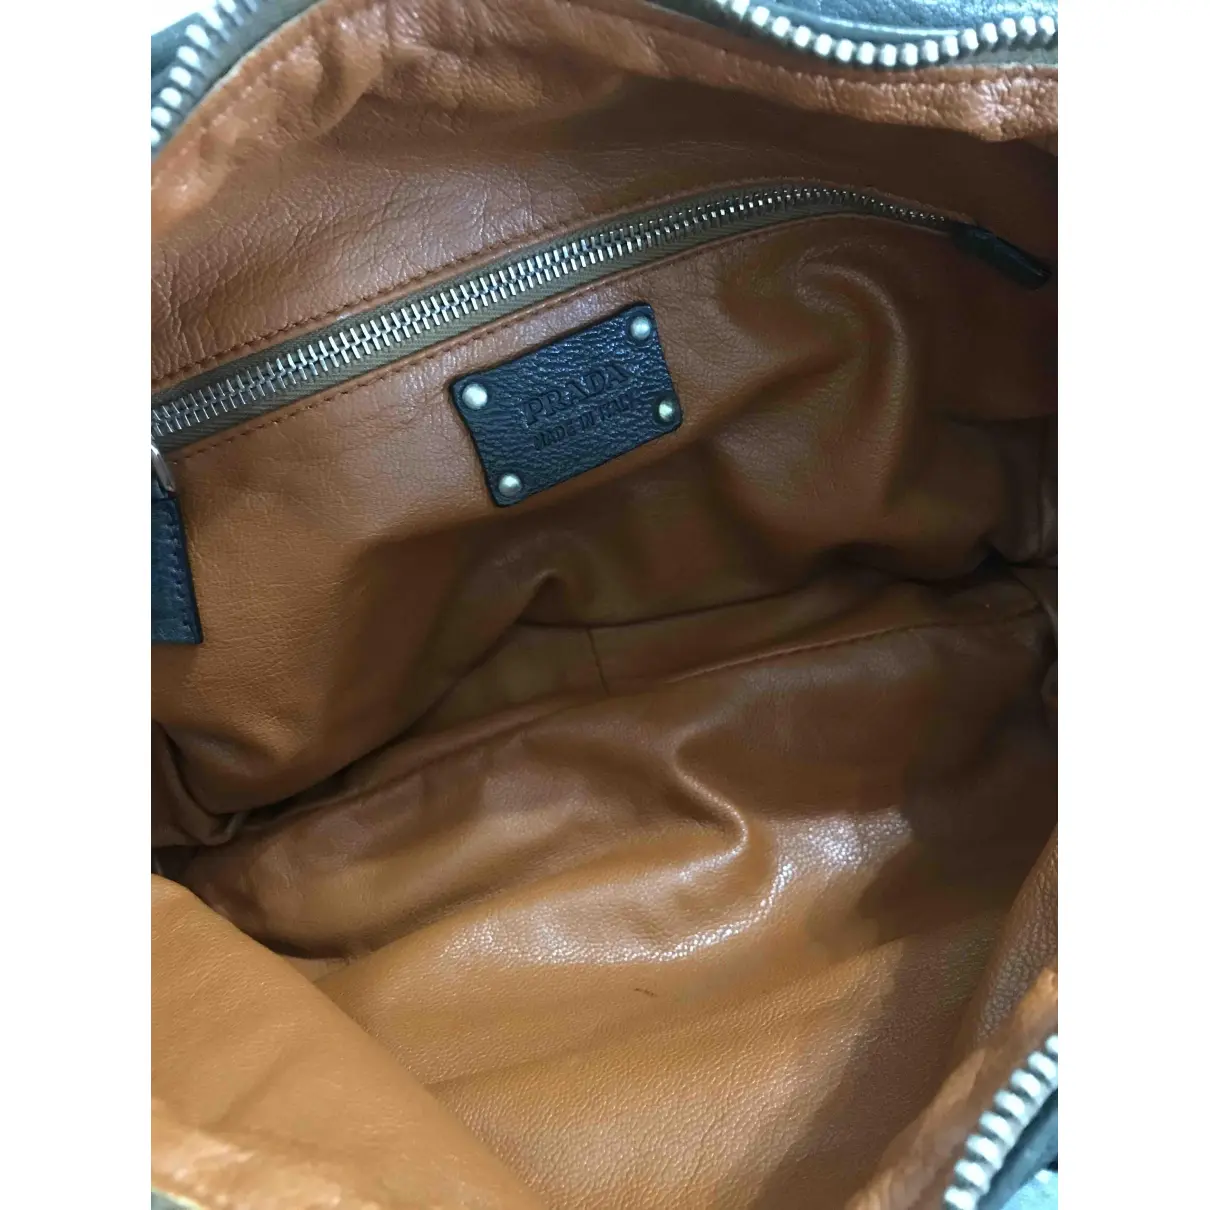 Cargo leather handbag Prada